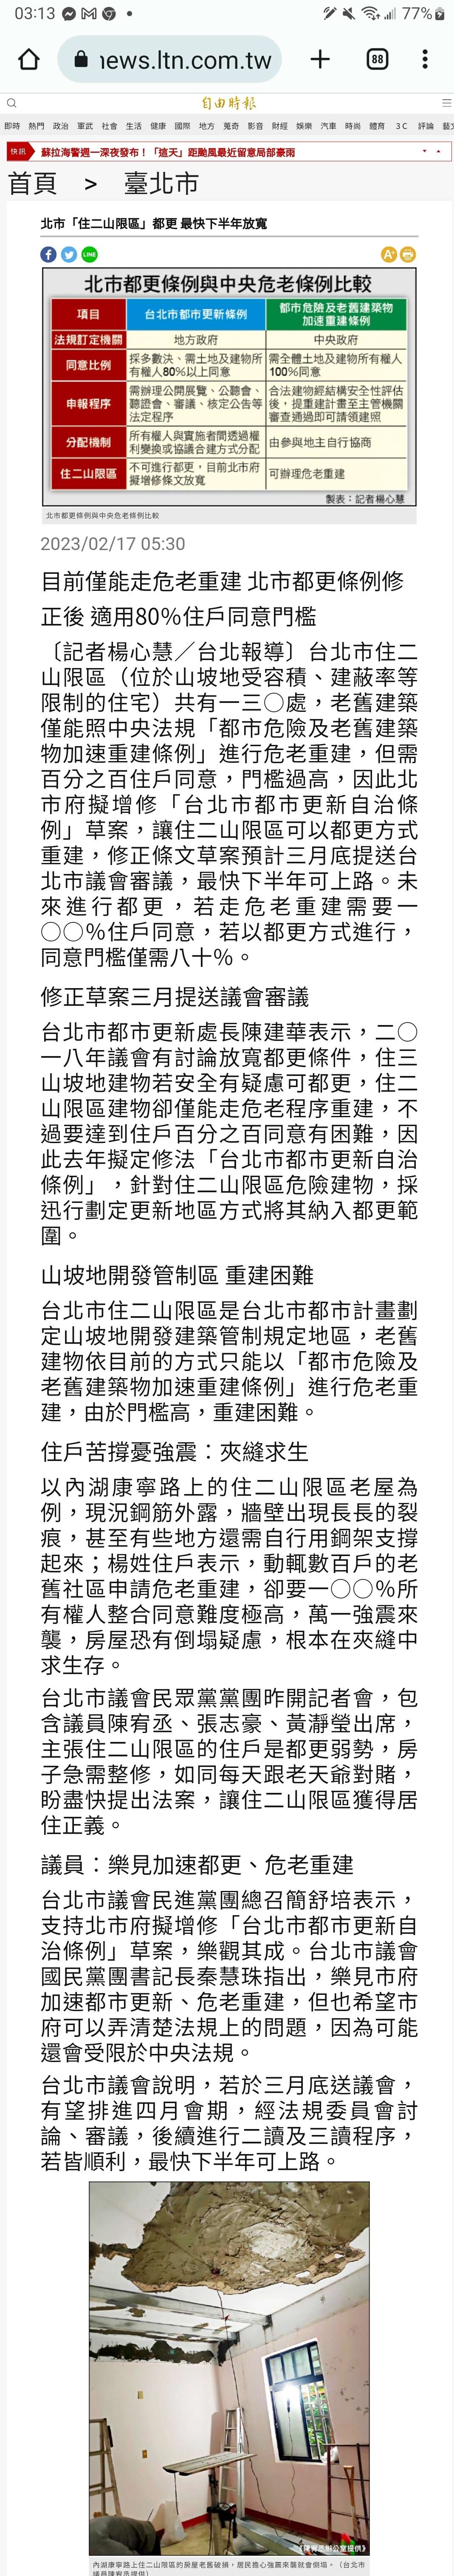 【不動產新聞】台北市「住二山限區」都更 最快下半年放寬